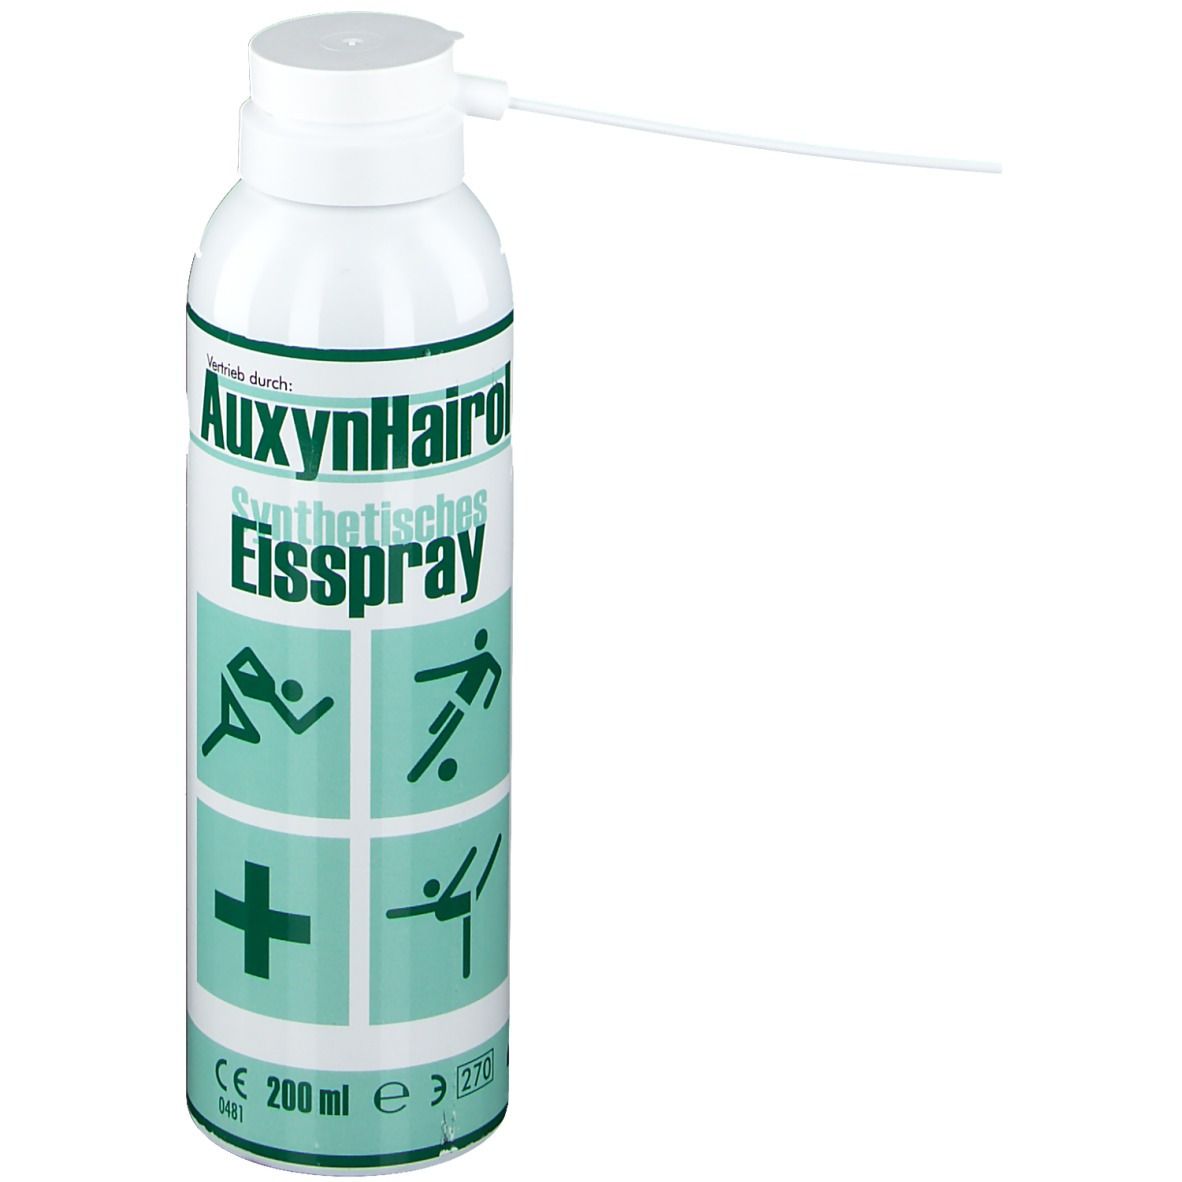 EISSPRAY 200 ml - arzneiprivat